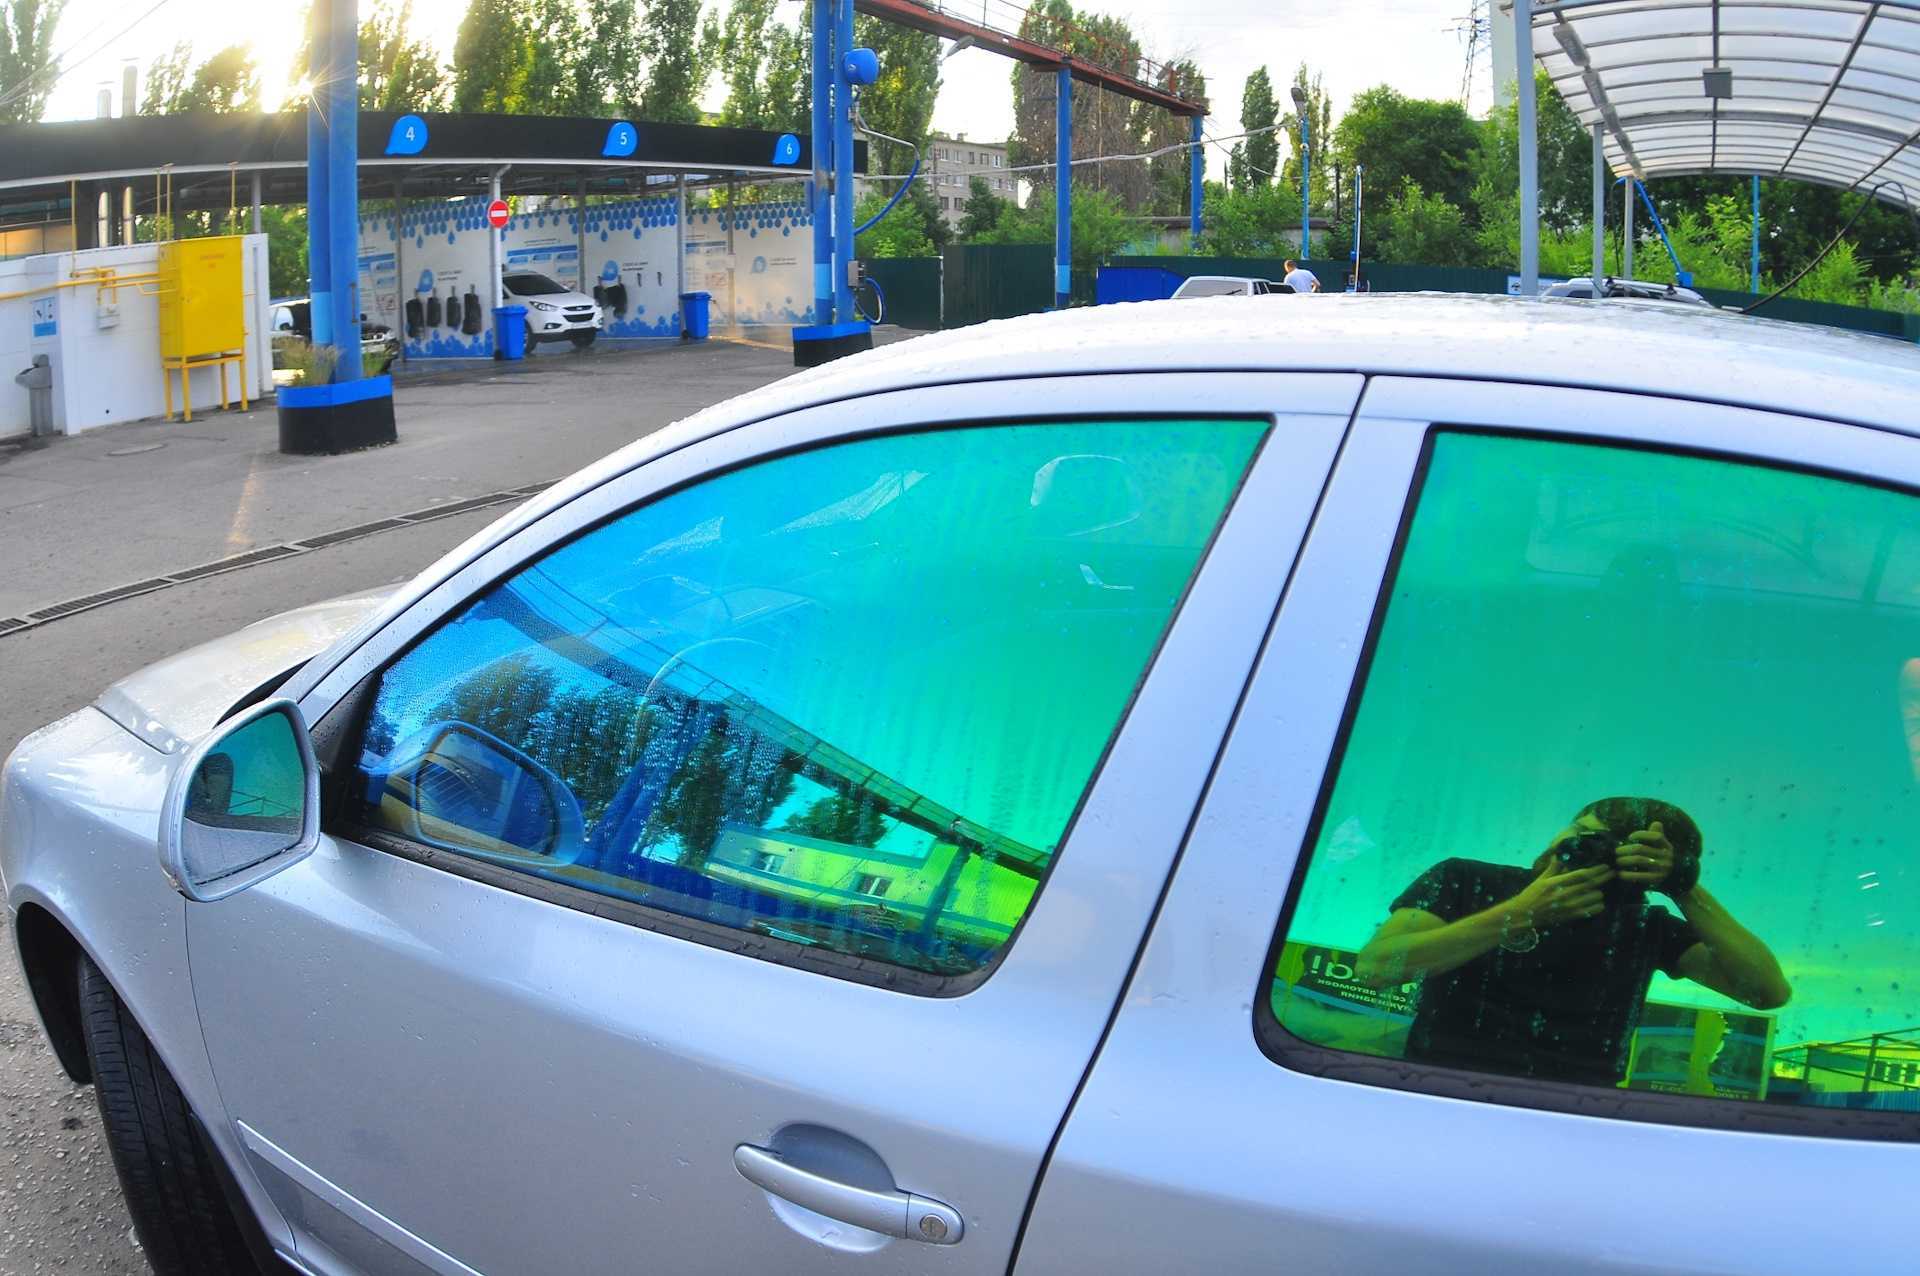 Эффектно на стеклах автомобиля смотрится желтая тонировка, она чаще бывает атермальной и защищает салон не только от любопытных взглядов, но и от перегрева